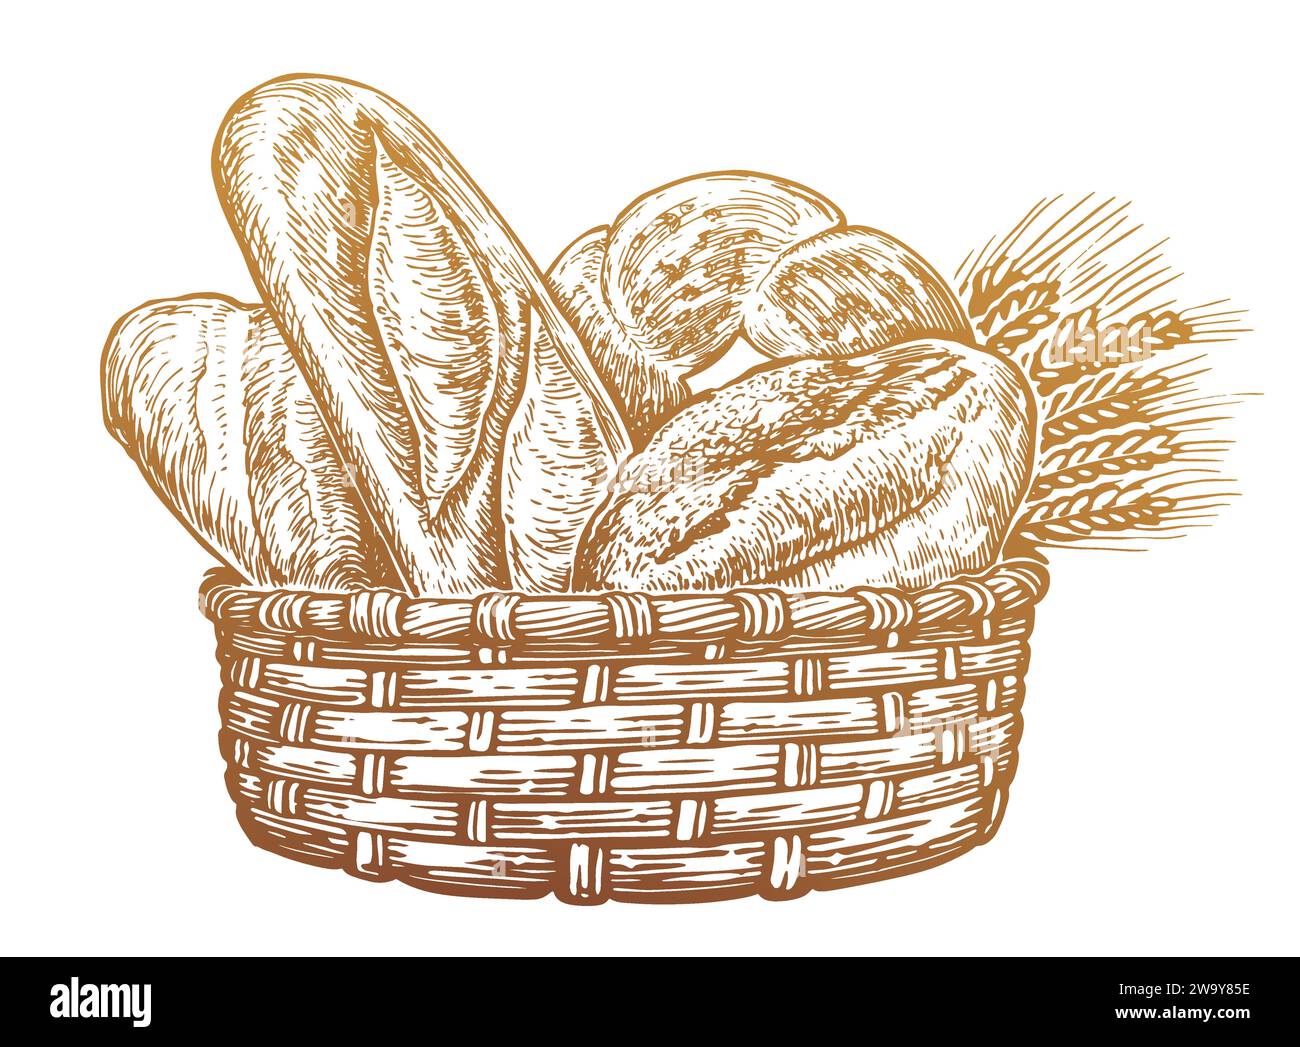 Rustikaler Korb mit gebackenem frischem Brot. Bäckerei Essen, Brot Skizze Vintage Vektor Illustration Stock Vektor